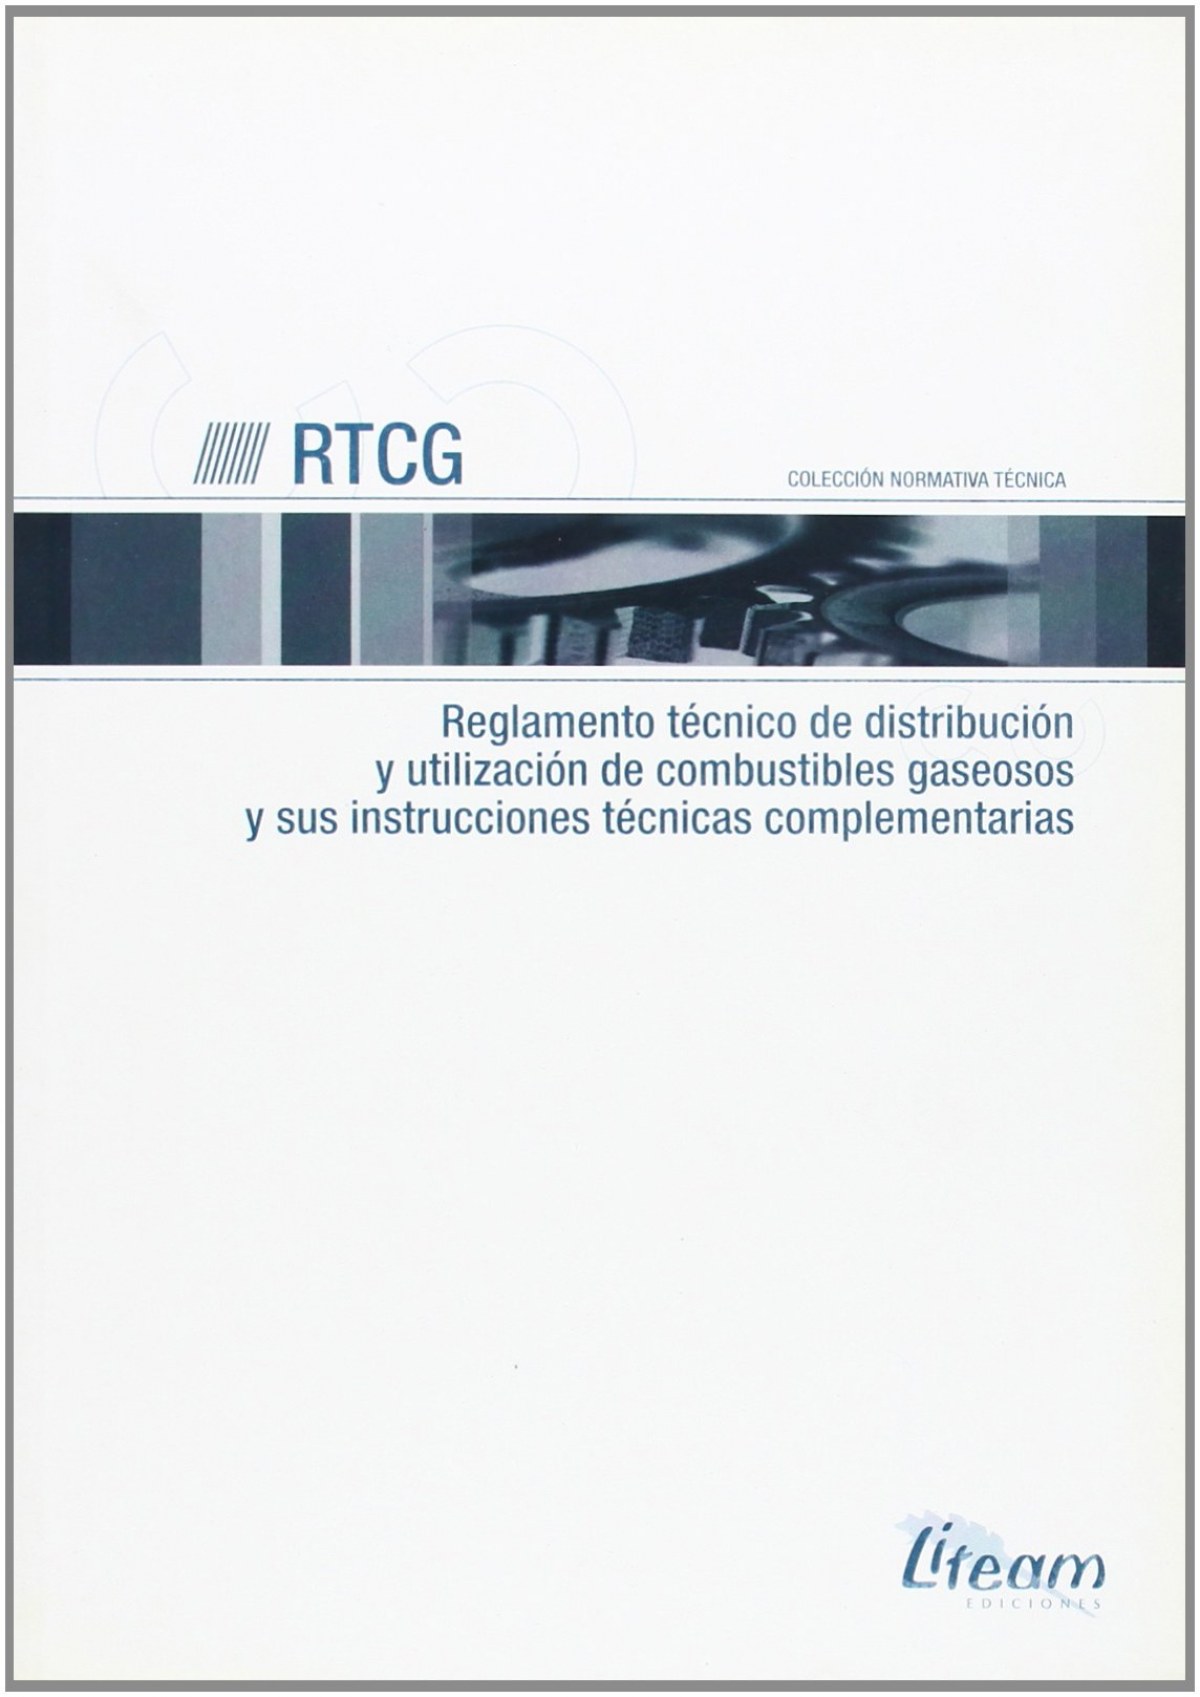 RTCG. Reglamento técnico de distribución y utilización de combustibles gaseosos y sus instrucciones técnicas complementarias - Vv.Aa.